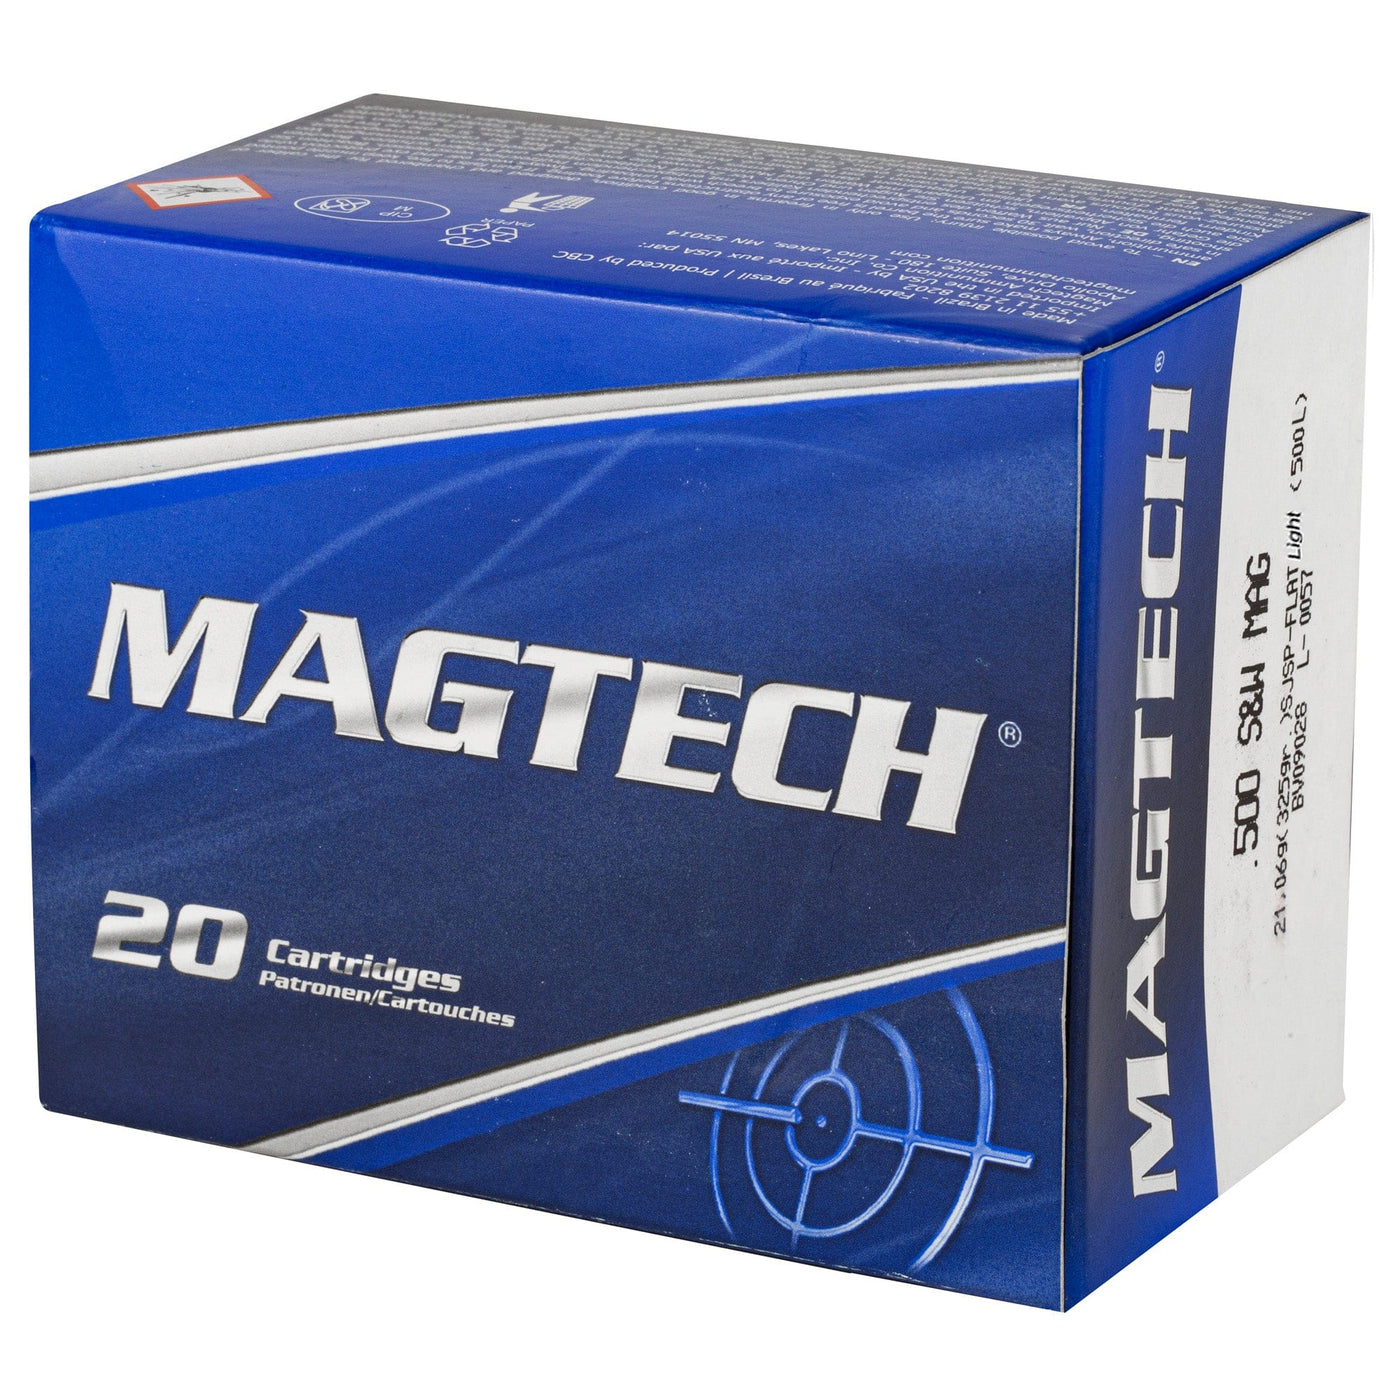 Magtech Magtech 500 S&w 325gr Sjsp Lt 20/500 Ammo